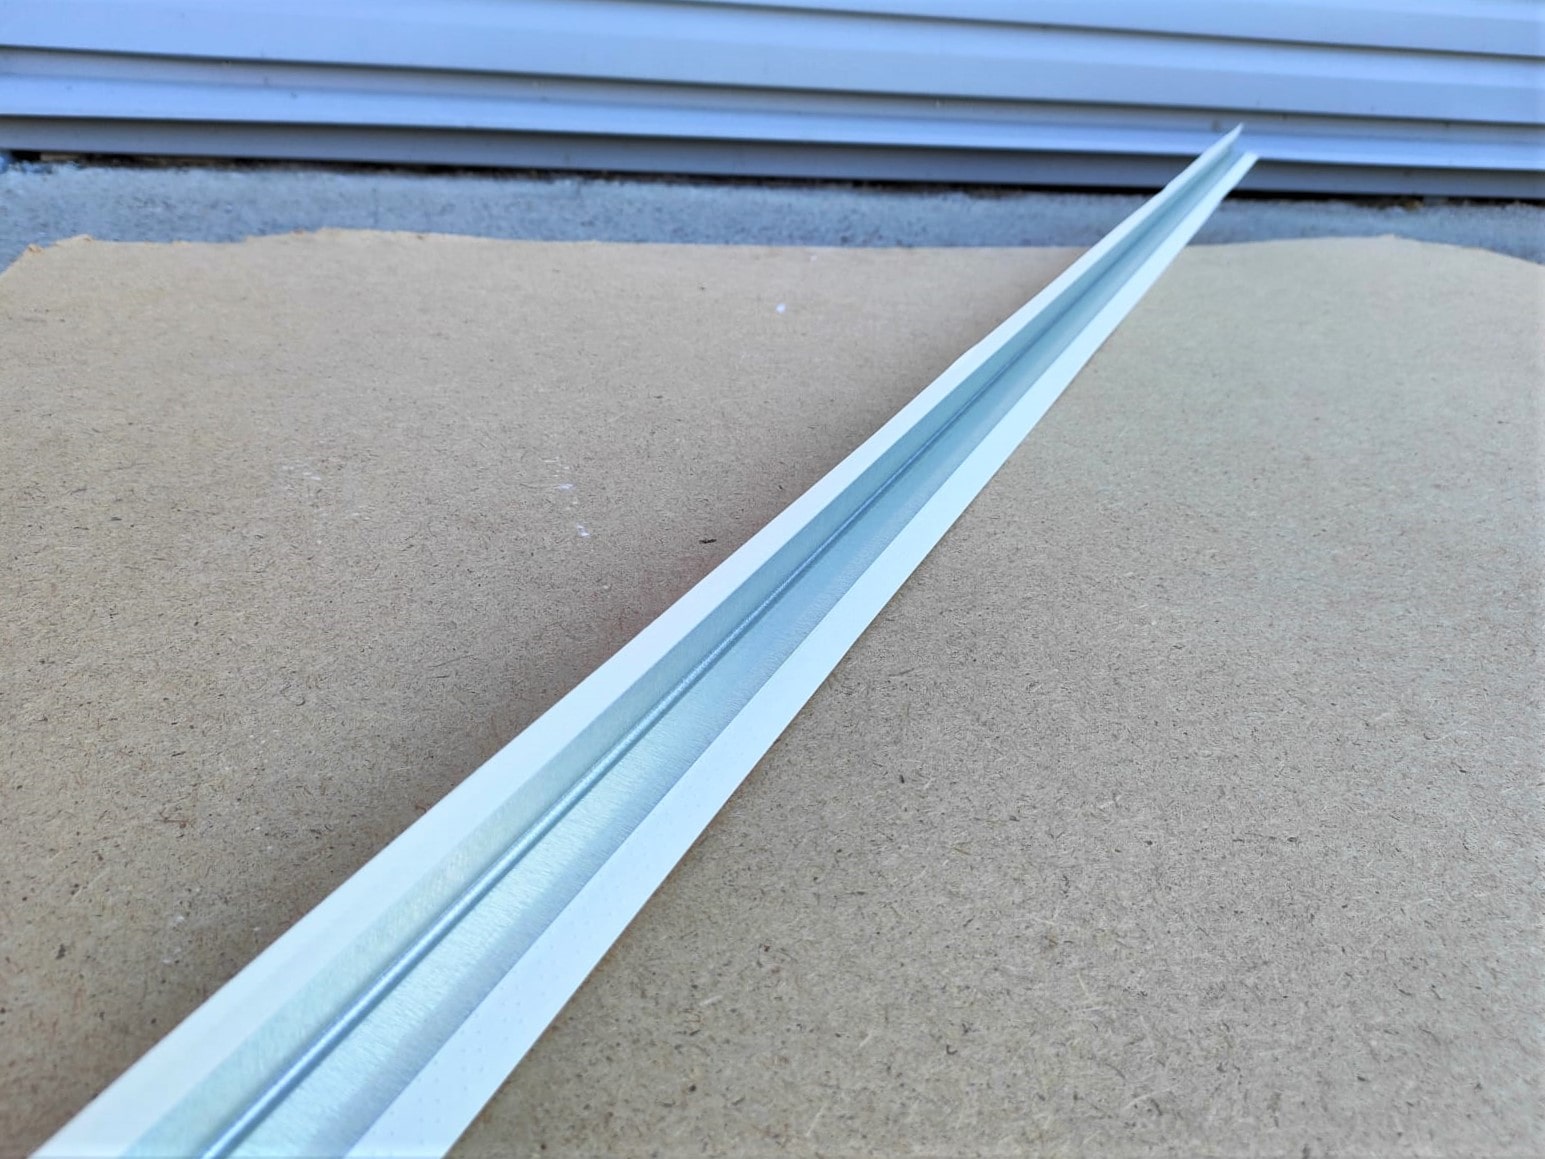 Металлизированный уголок sheetrock (Шитрок) на бумажной основе для внешних углов 3,05 м